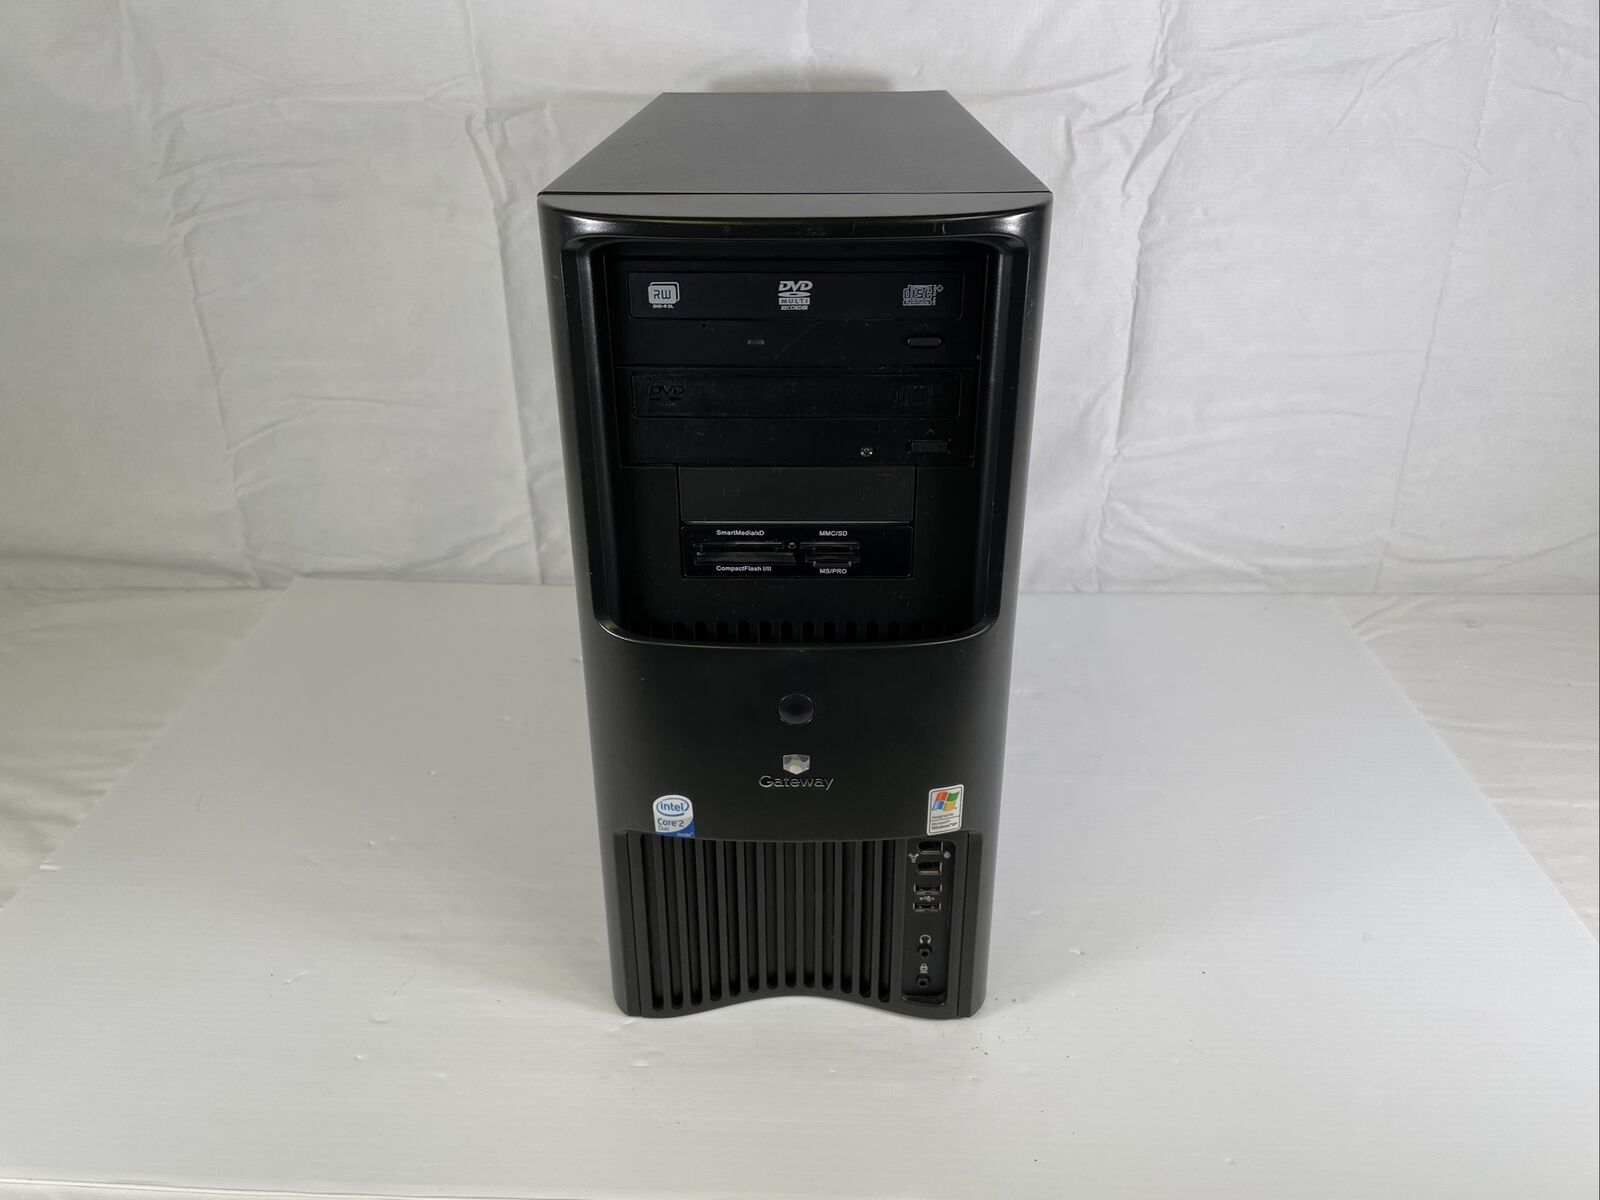 Gateway Desktop PC E-6610D Core 2 Duo 1.86GHz 2GB RAM No HDD - Retro Gaming